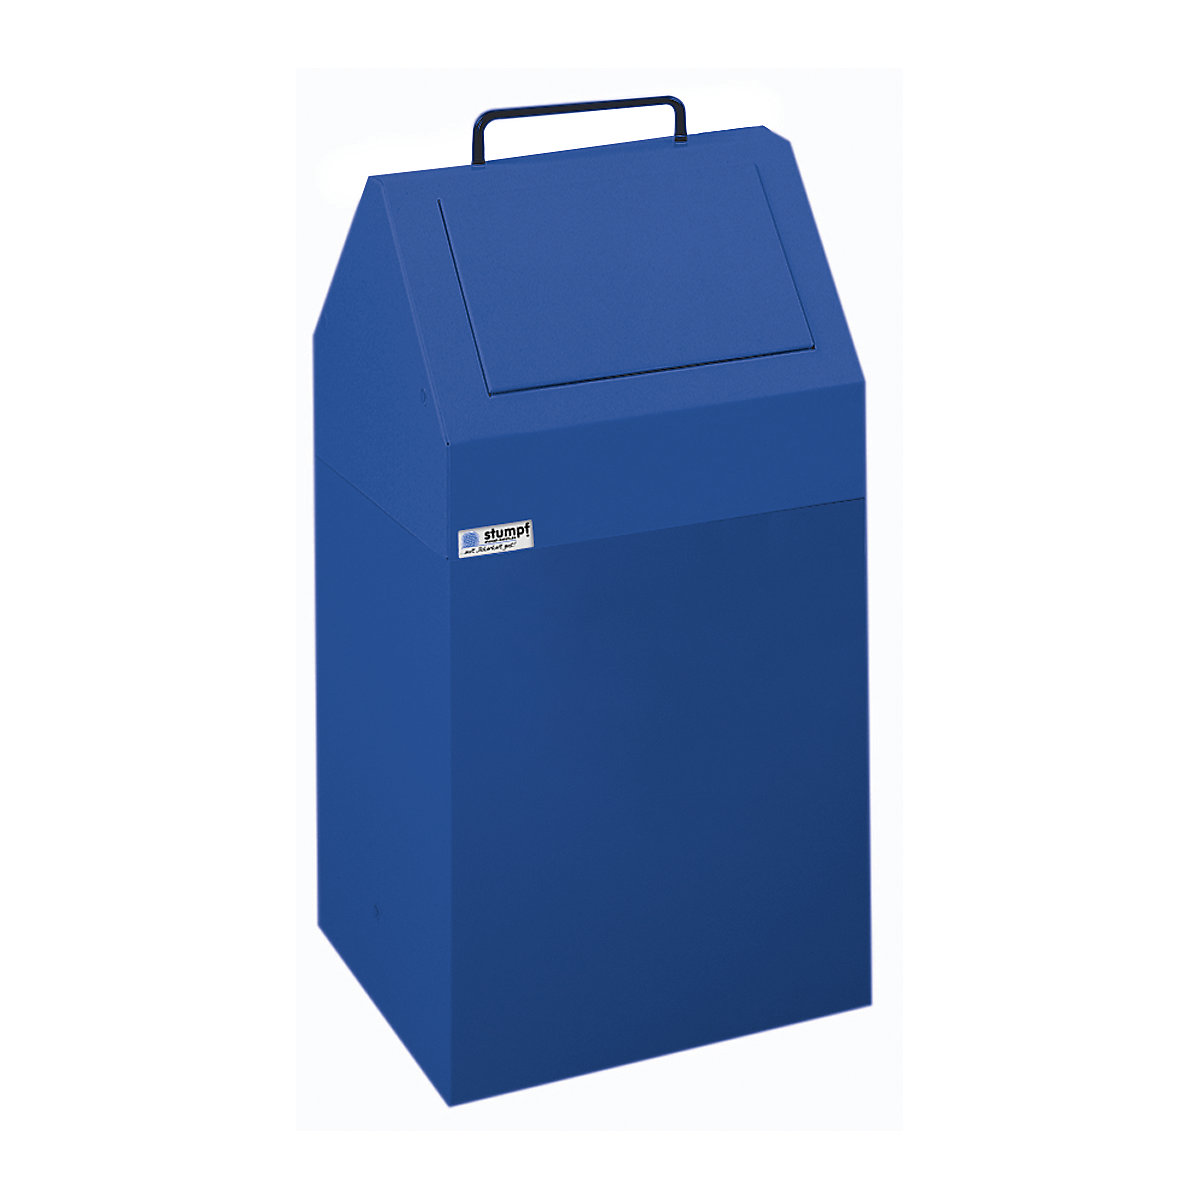 Coletor de materiais recicláveis com tampa de inserção